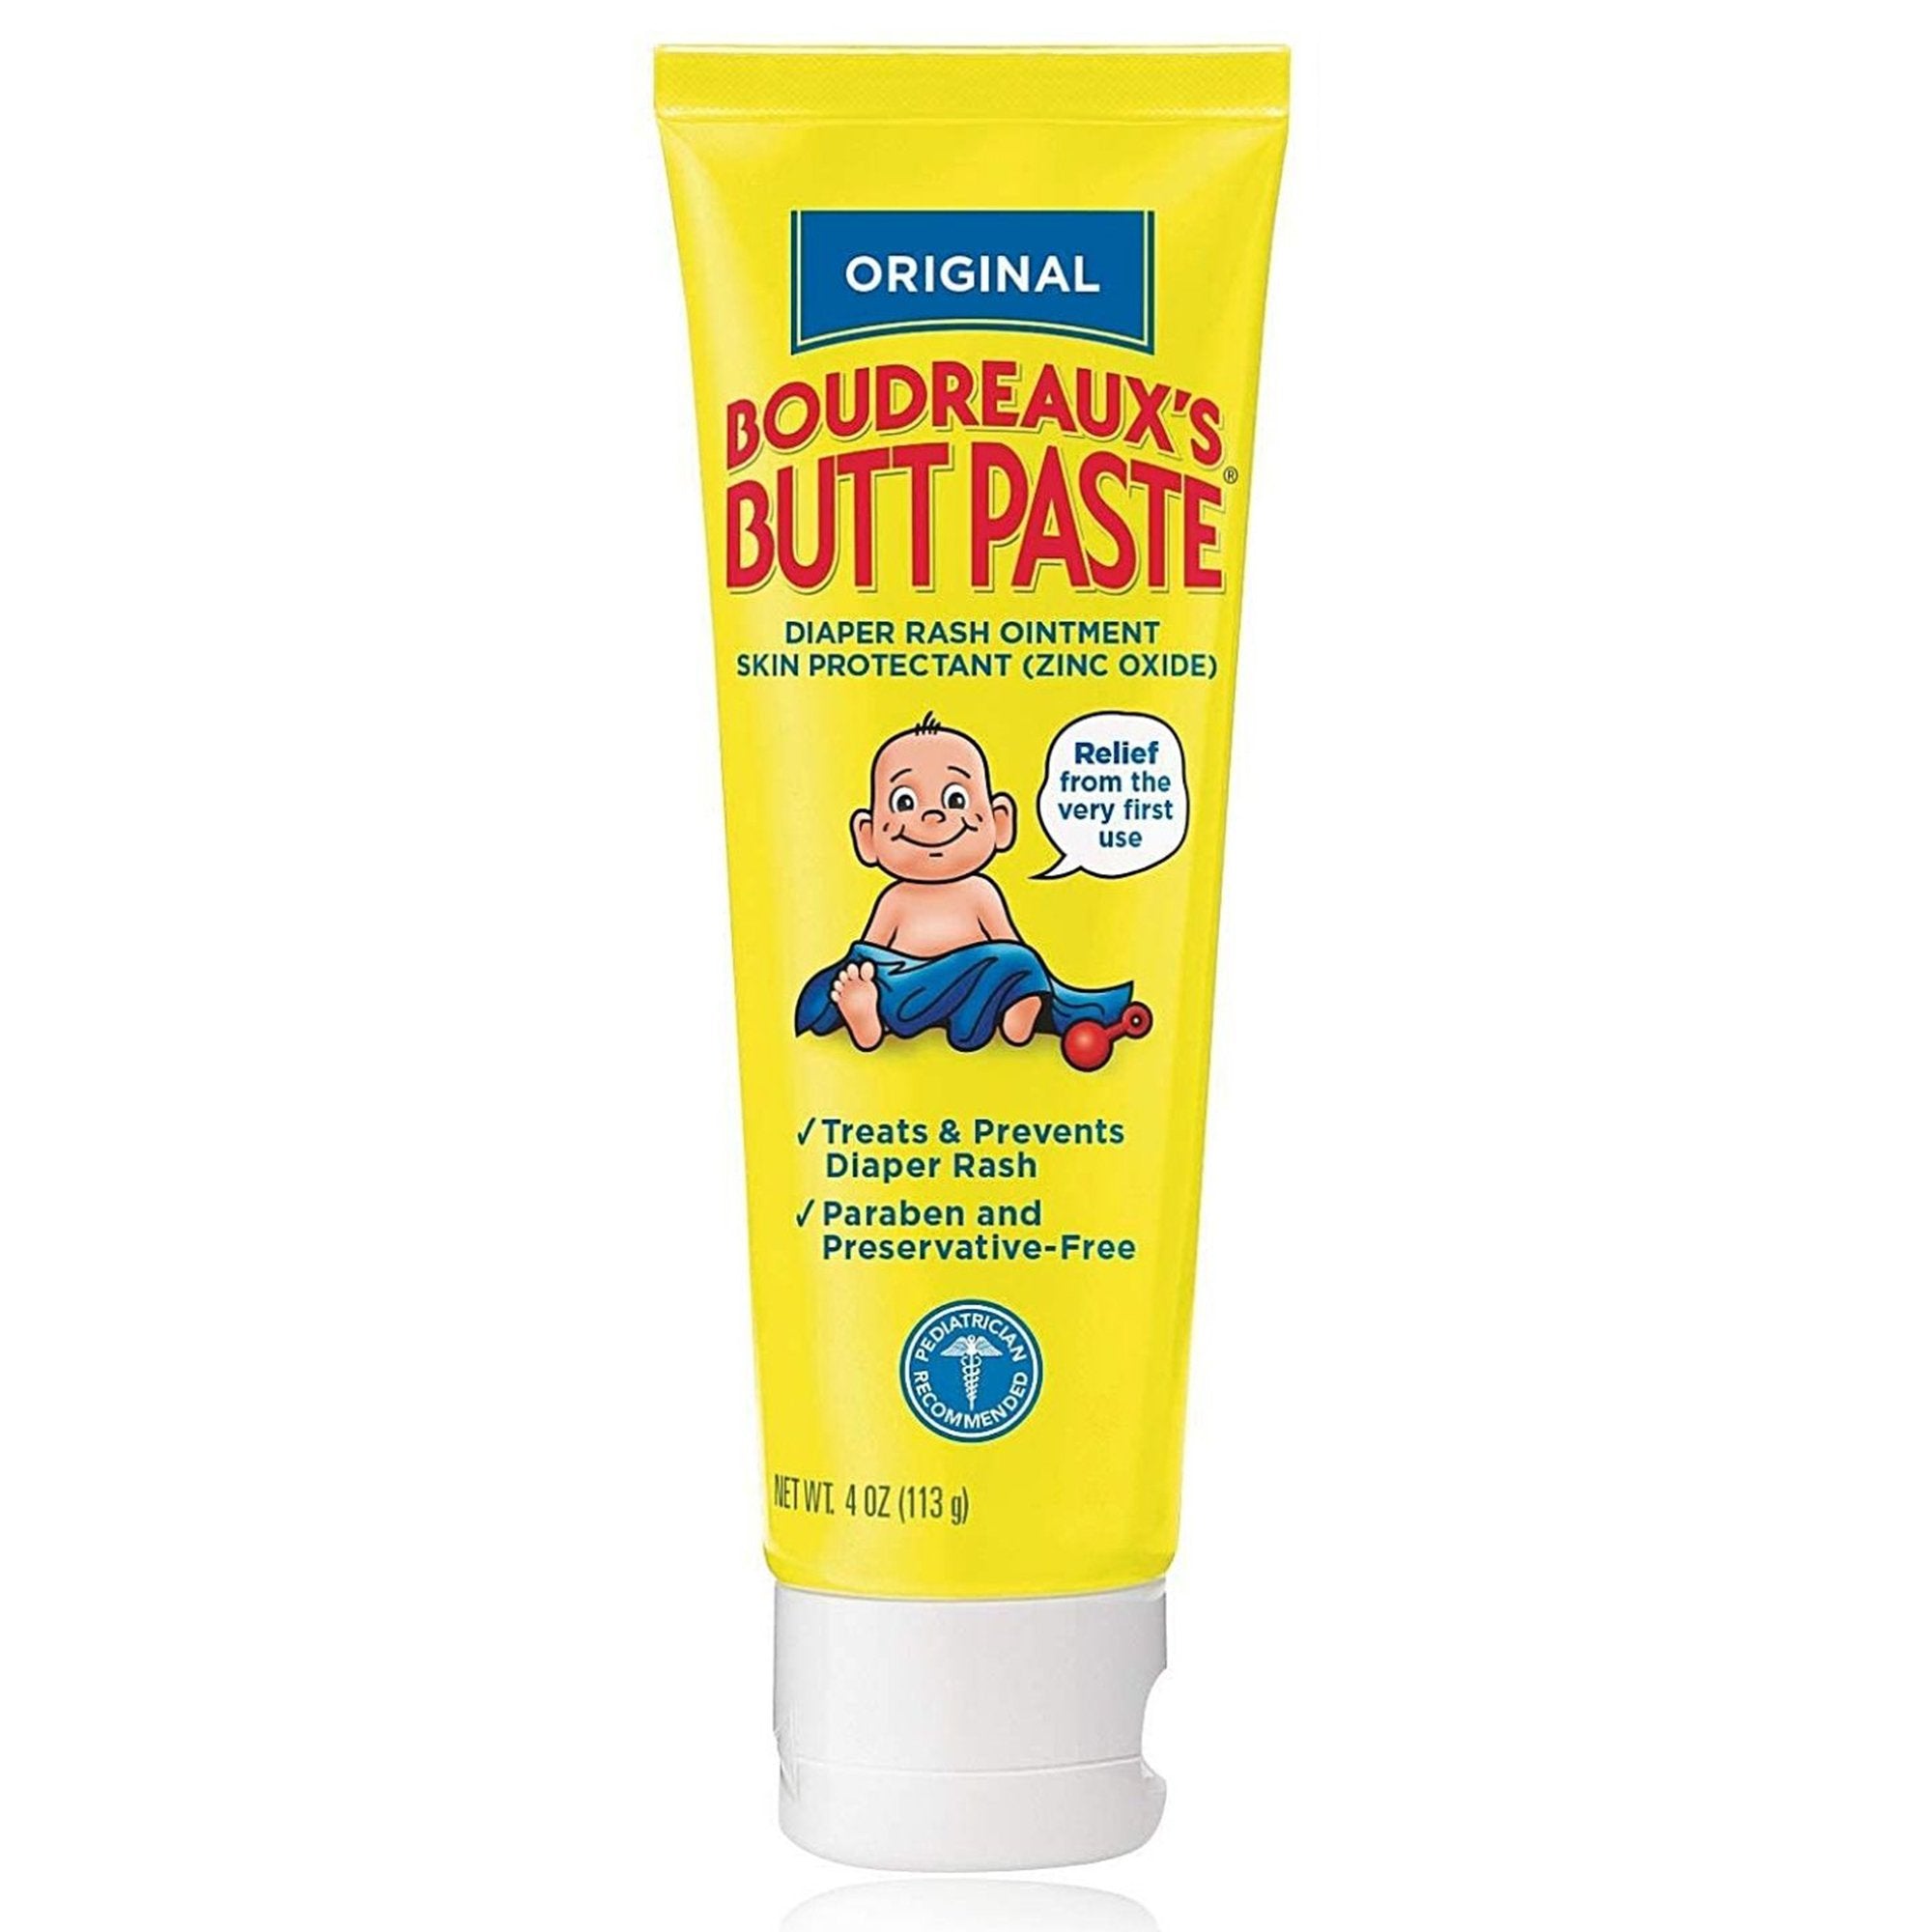 Boudreaux's Original Butt Paste Diaper Rash Treatment, 16% Zinc Oxide, 4 oz Tube